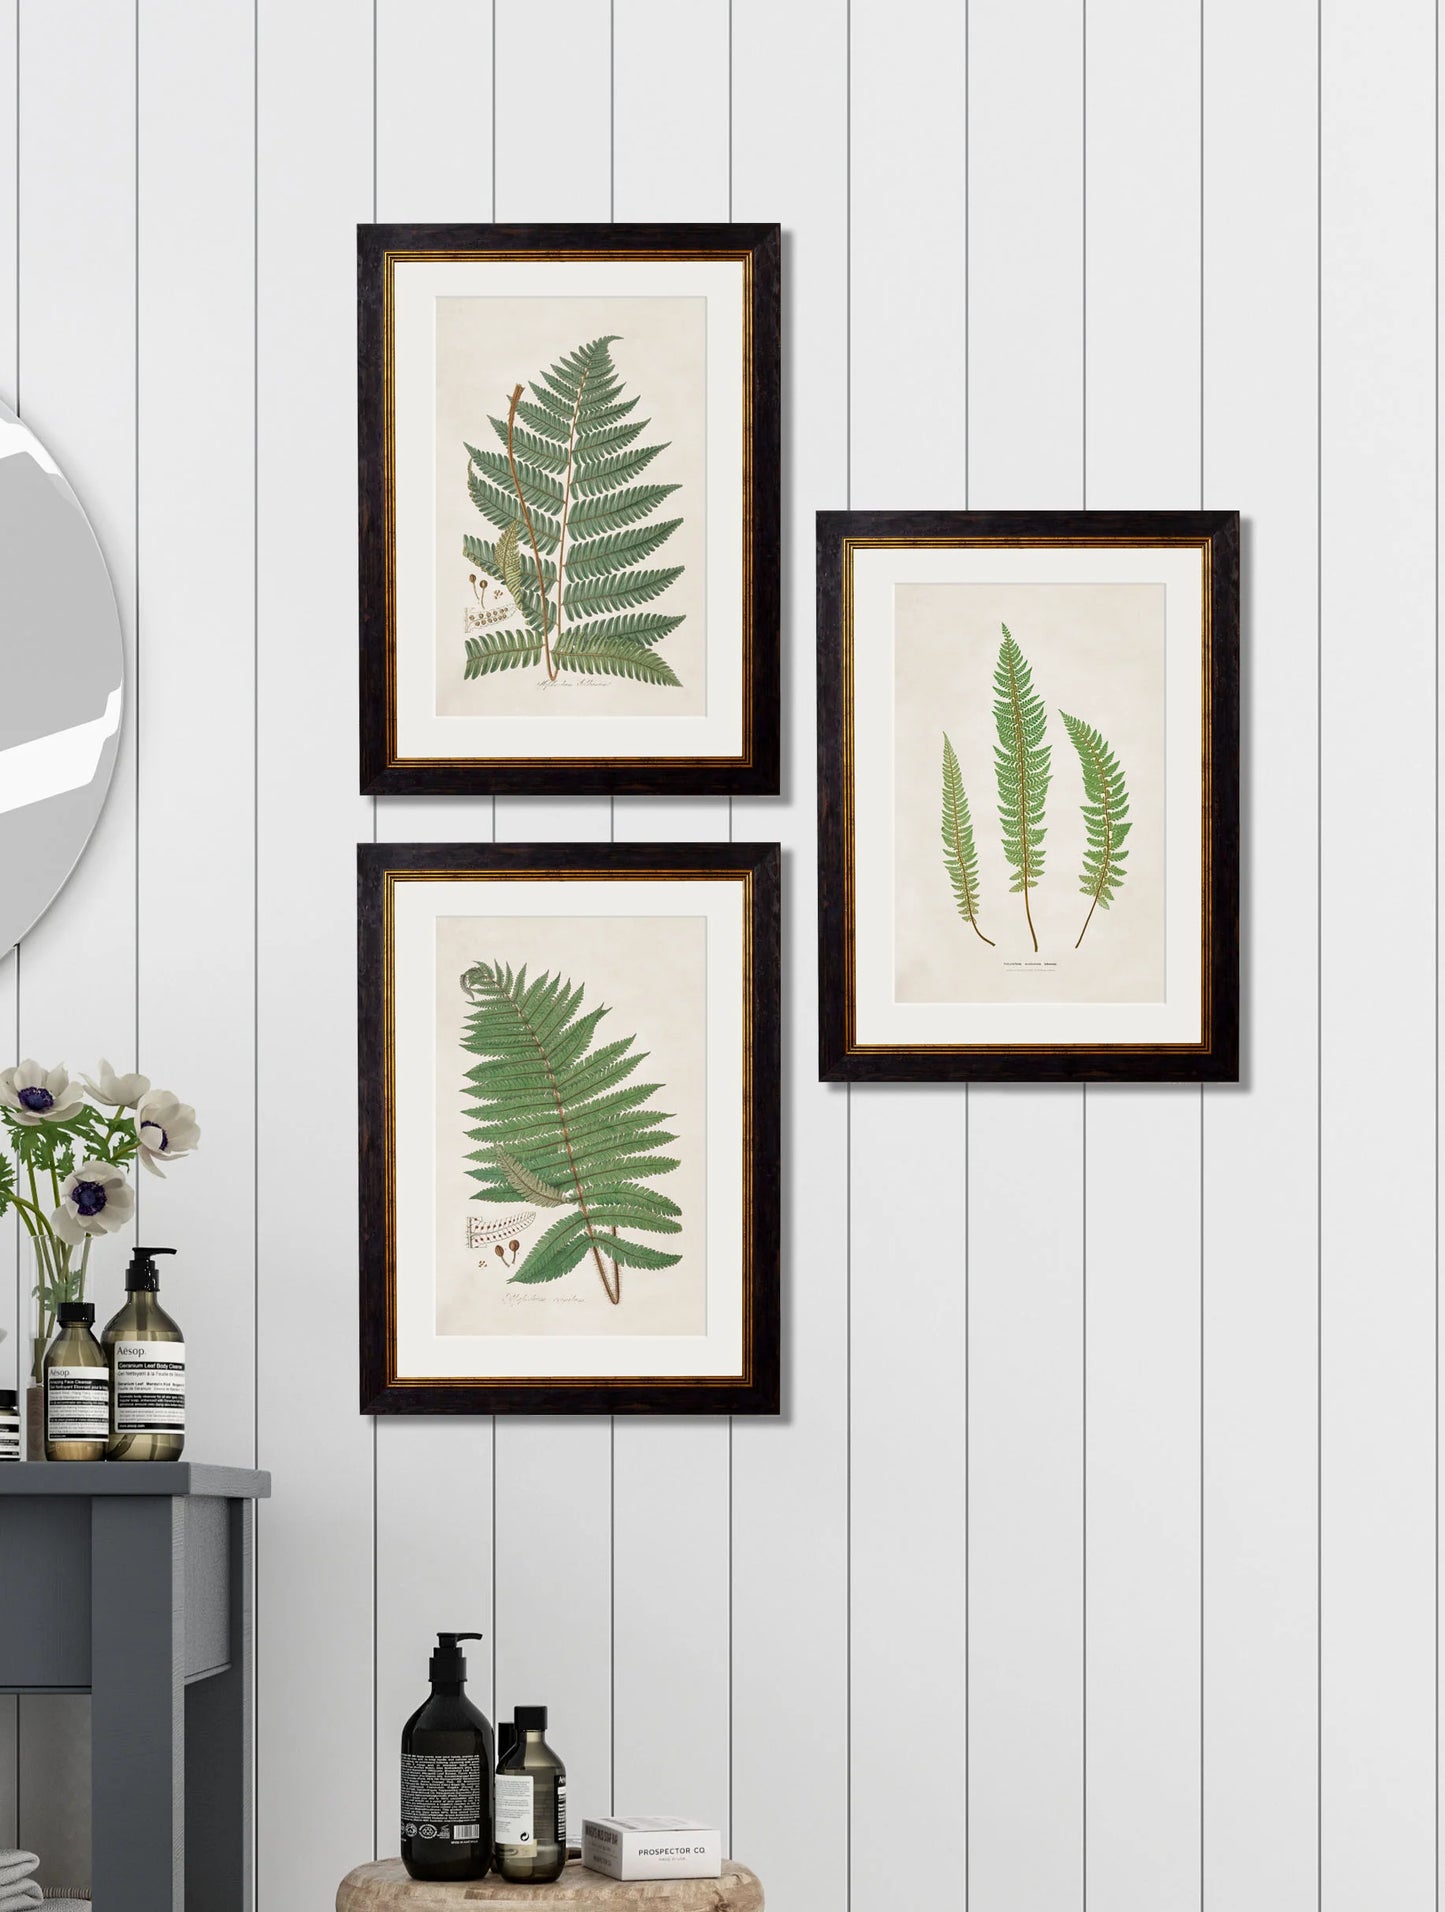 Collection of Ferns c.1831 Framed Prints